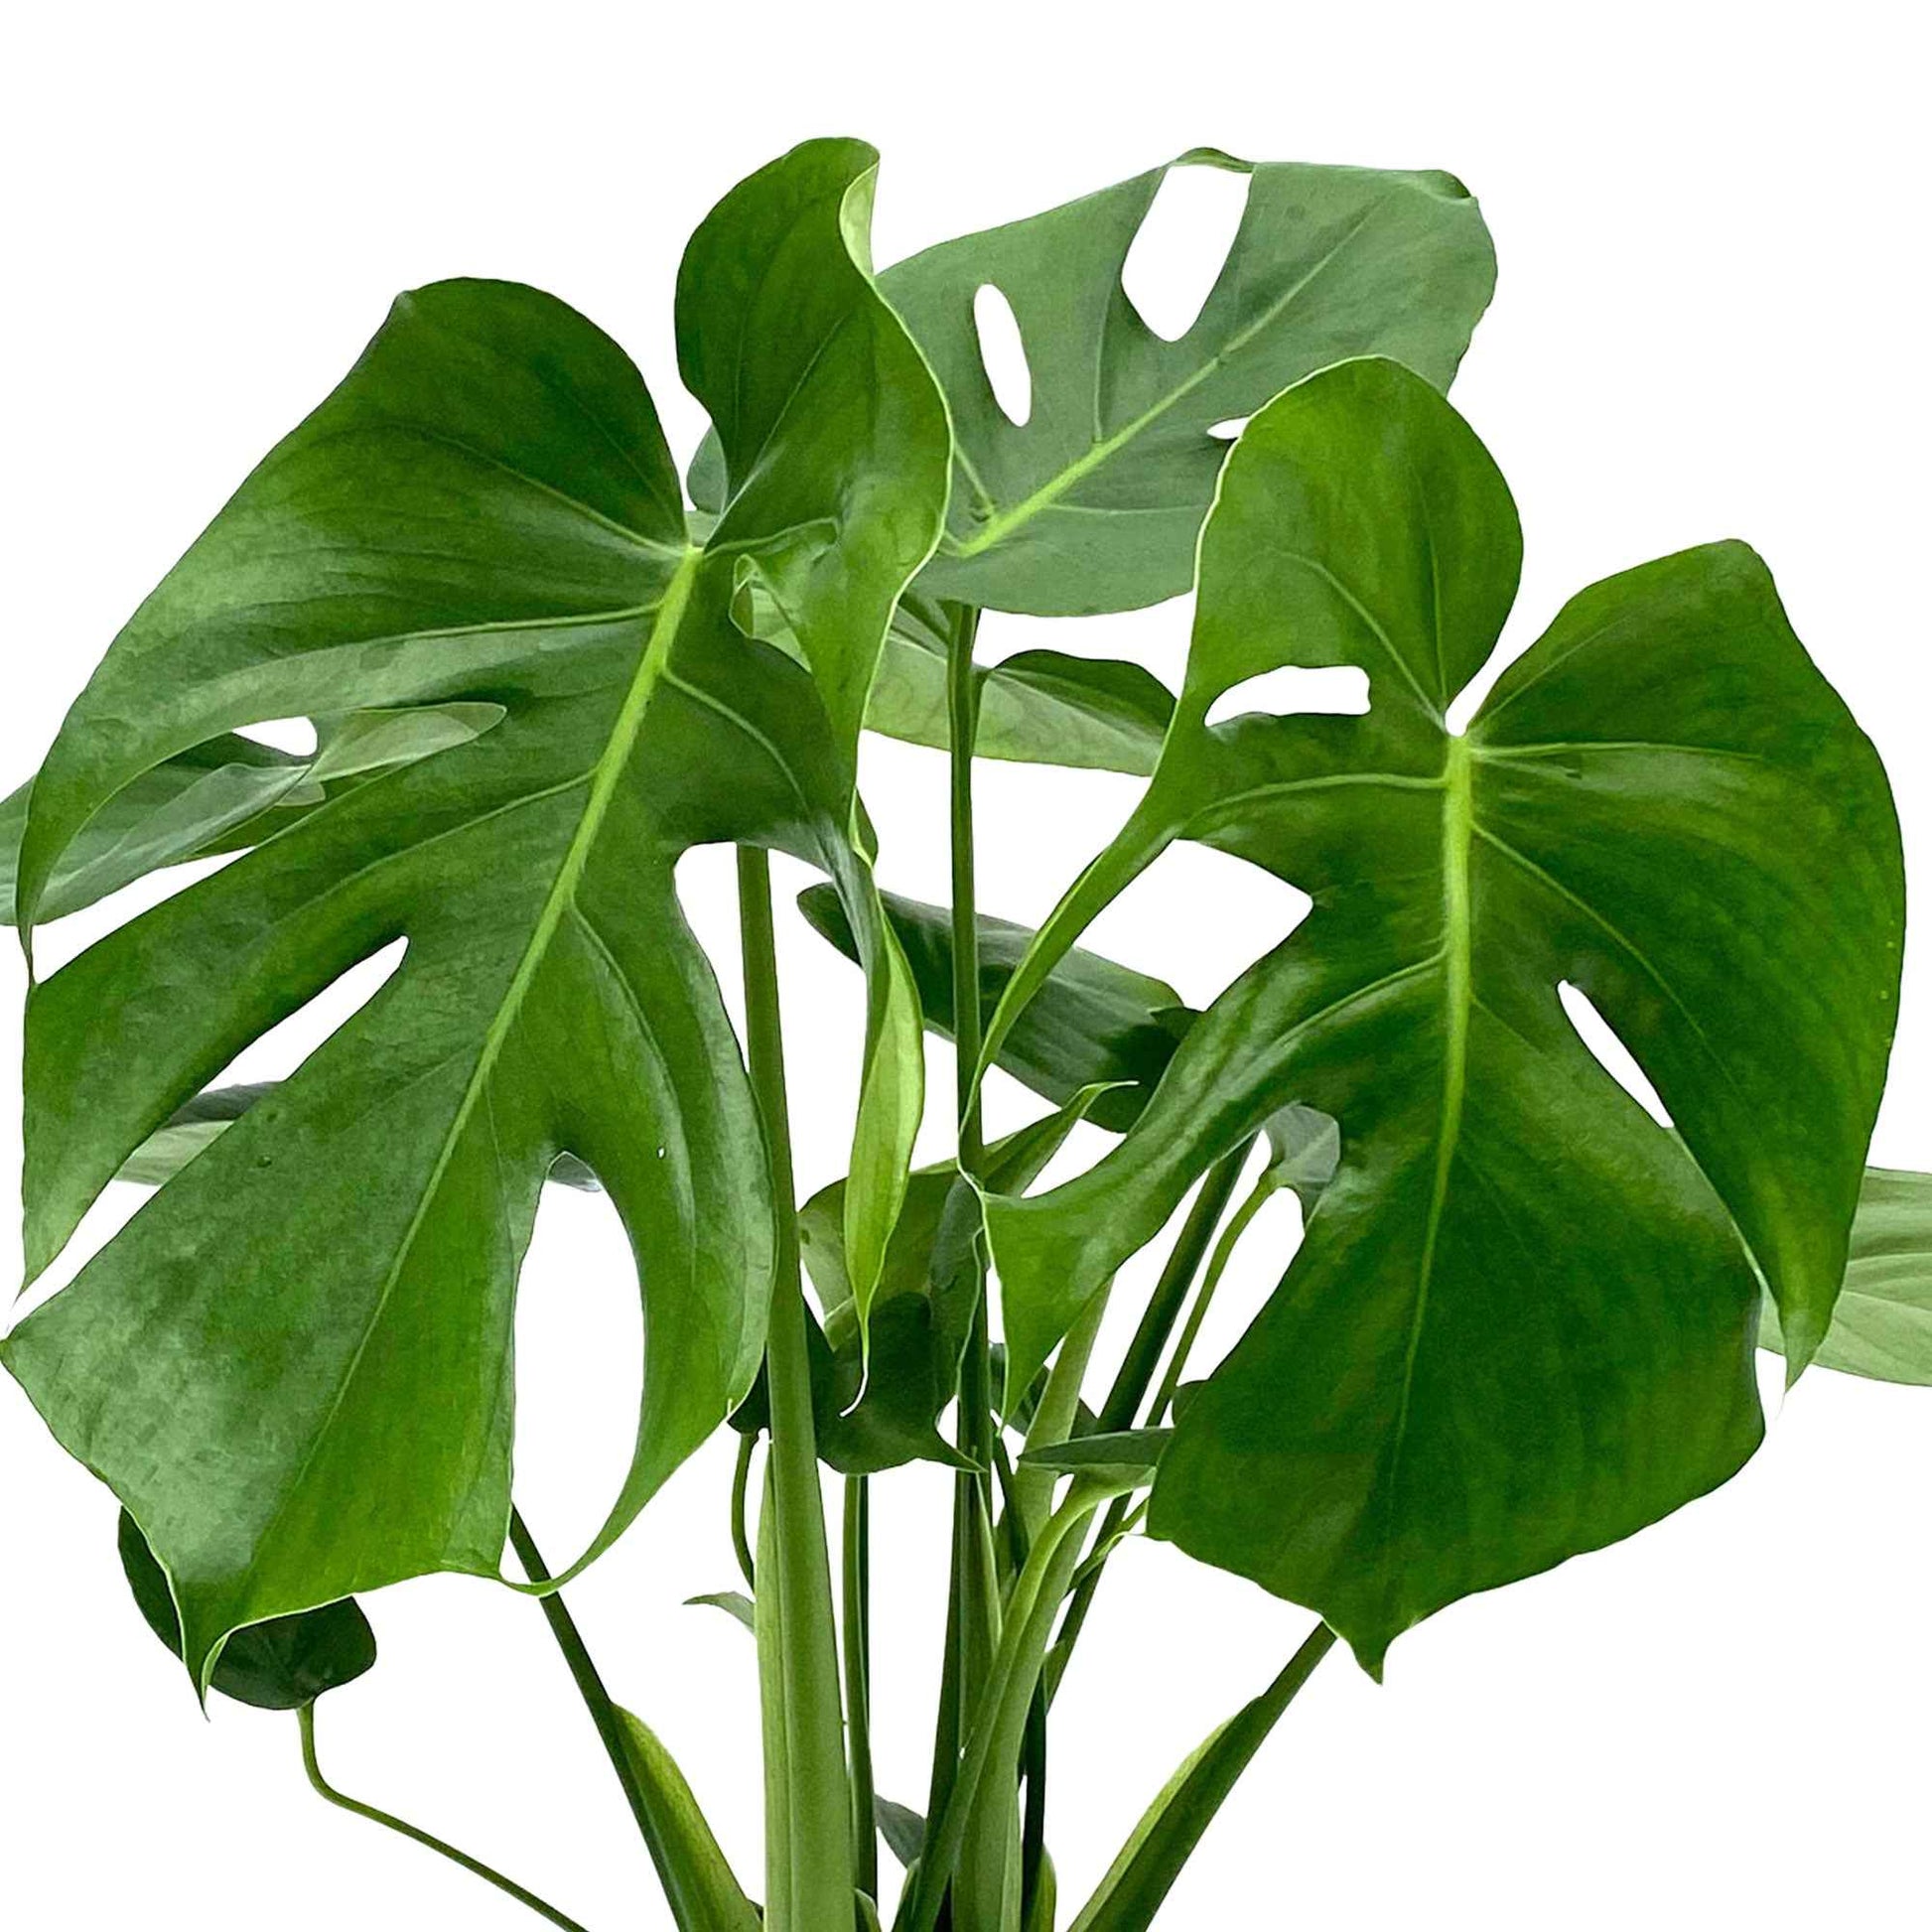 Lochpflanze Monstera deliciosa inkl. Weidenkorb, natürlich - Beliebte Zimmerpflanzen